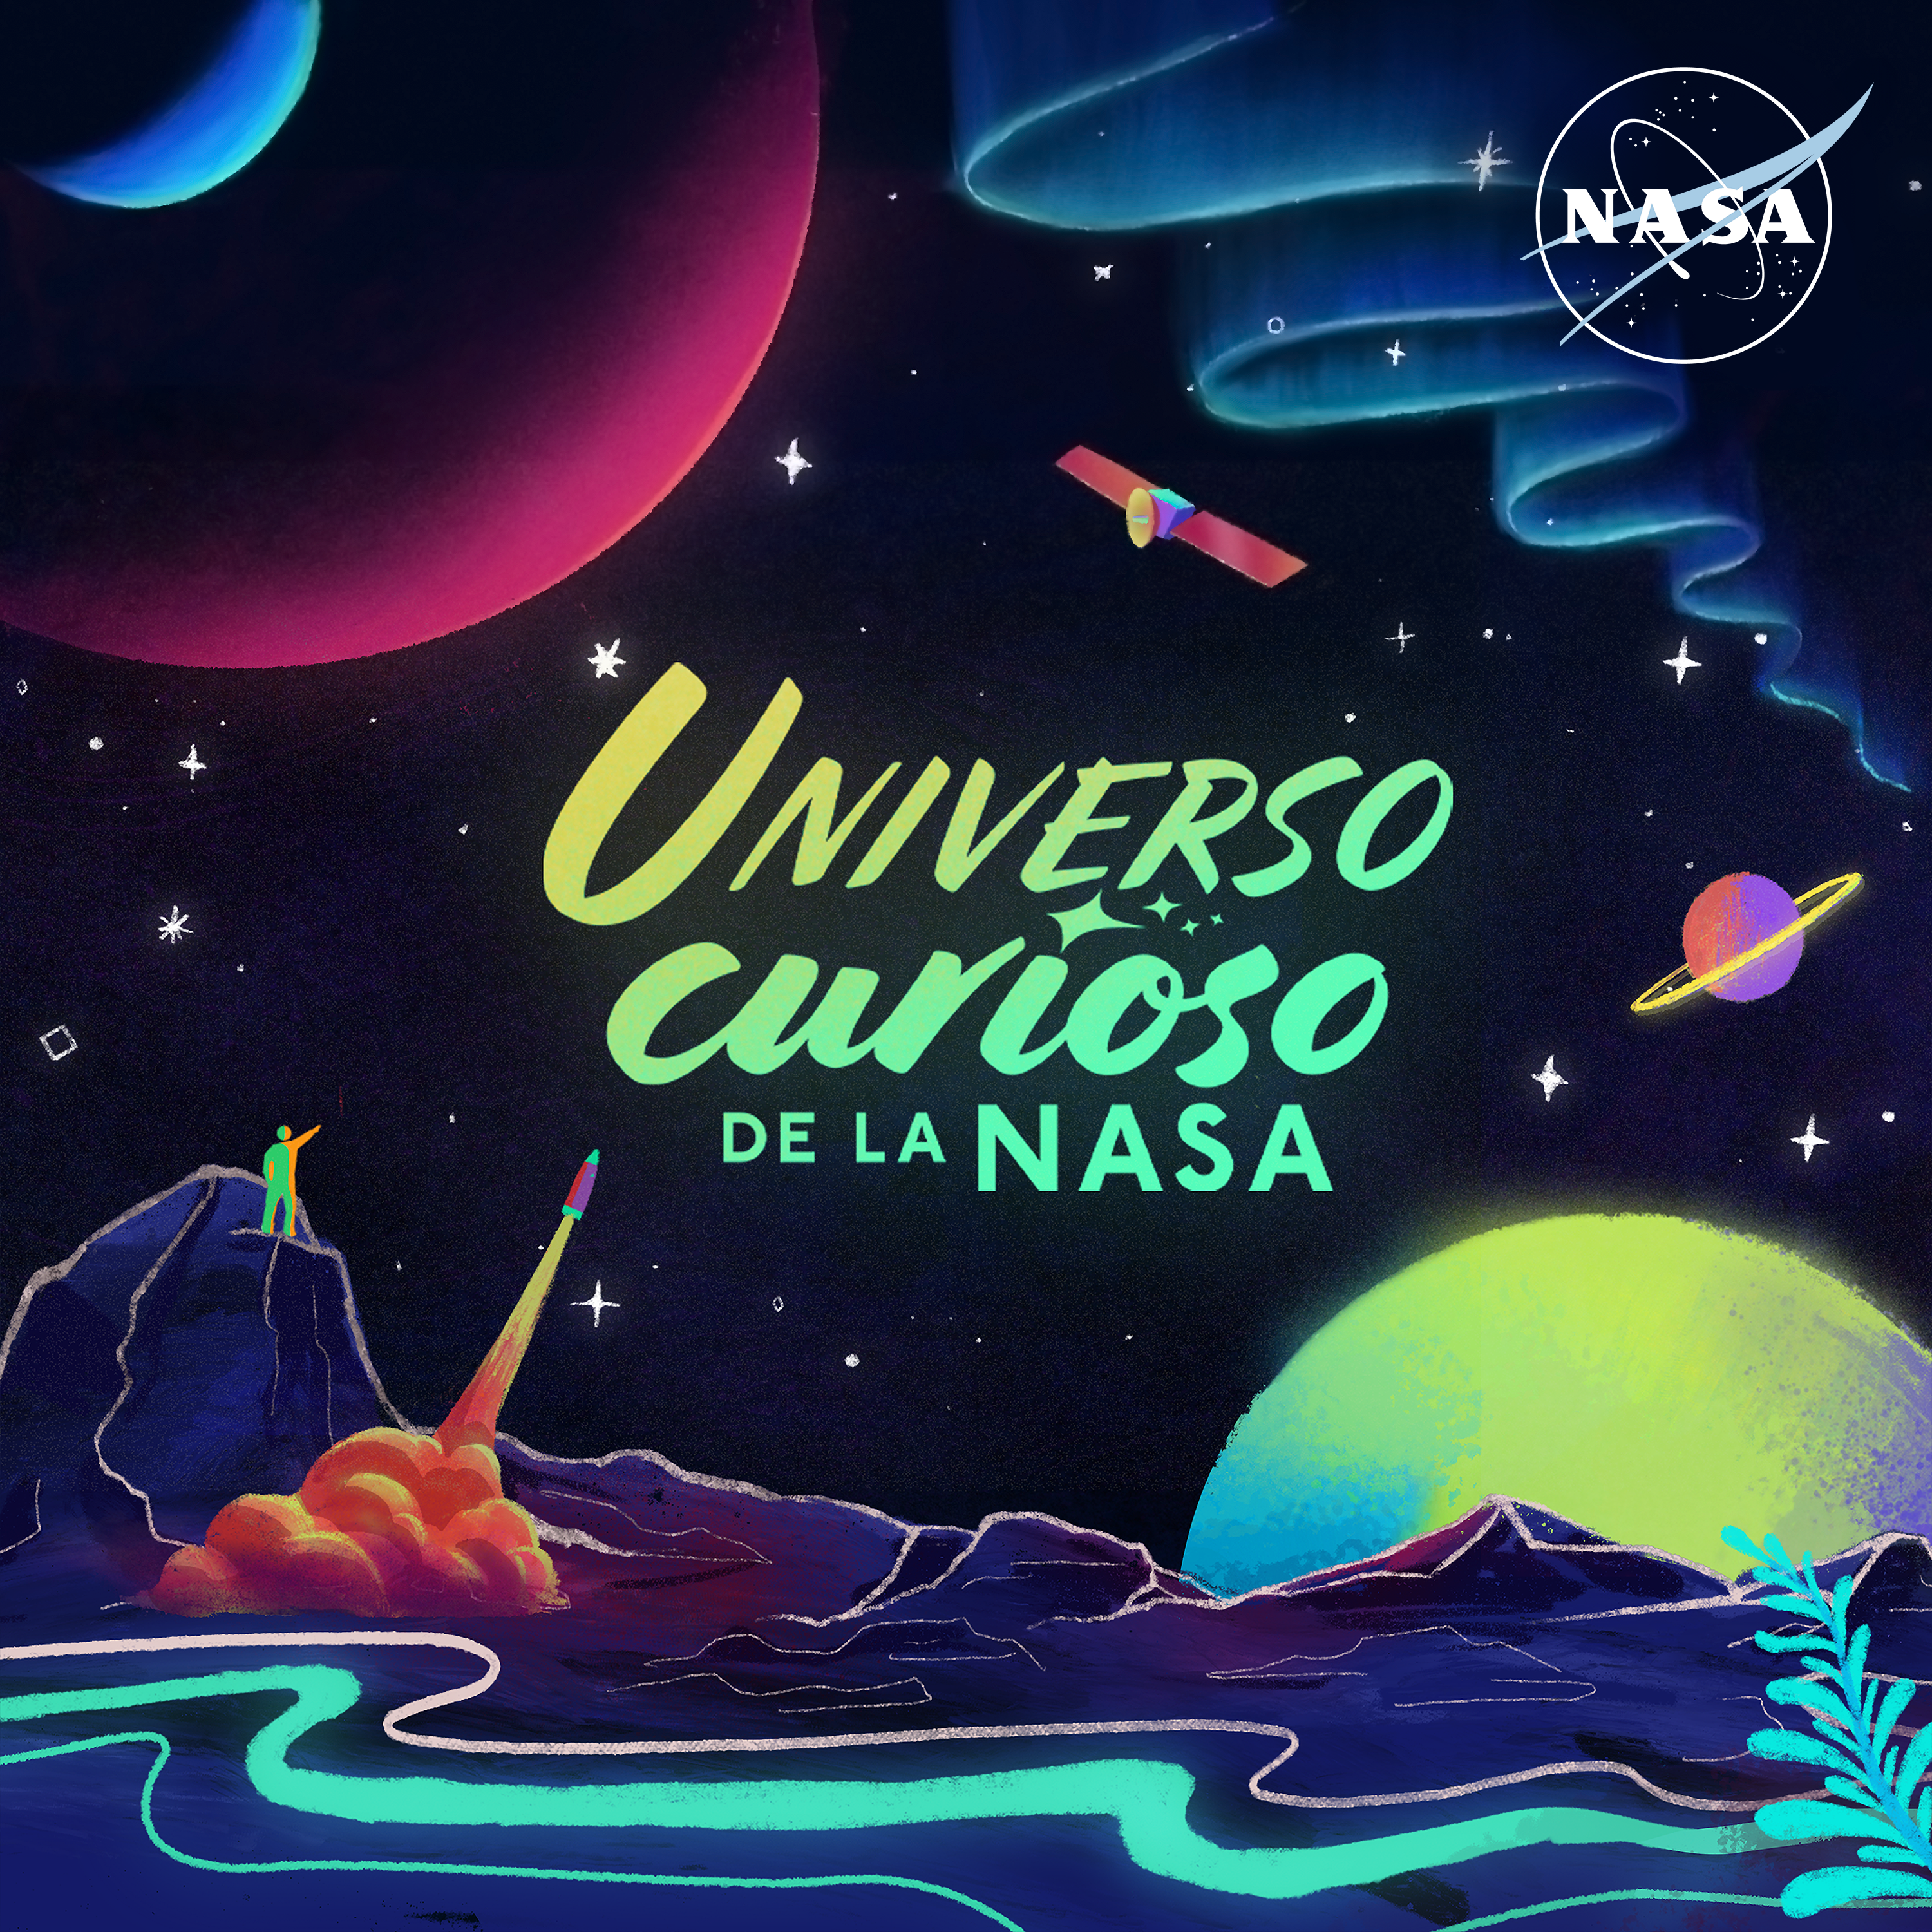 Bienvenidos a Universo curioso de la NASA, en donde te invitamos a explorar el cosmos en tu idioma. En este pódcast, ¡la NASA es tu guía turística a las estrellas!